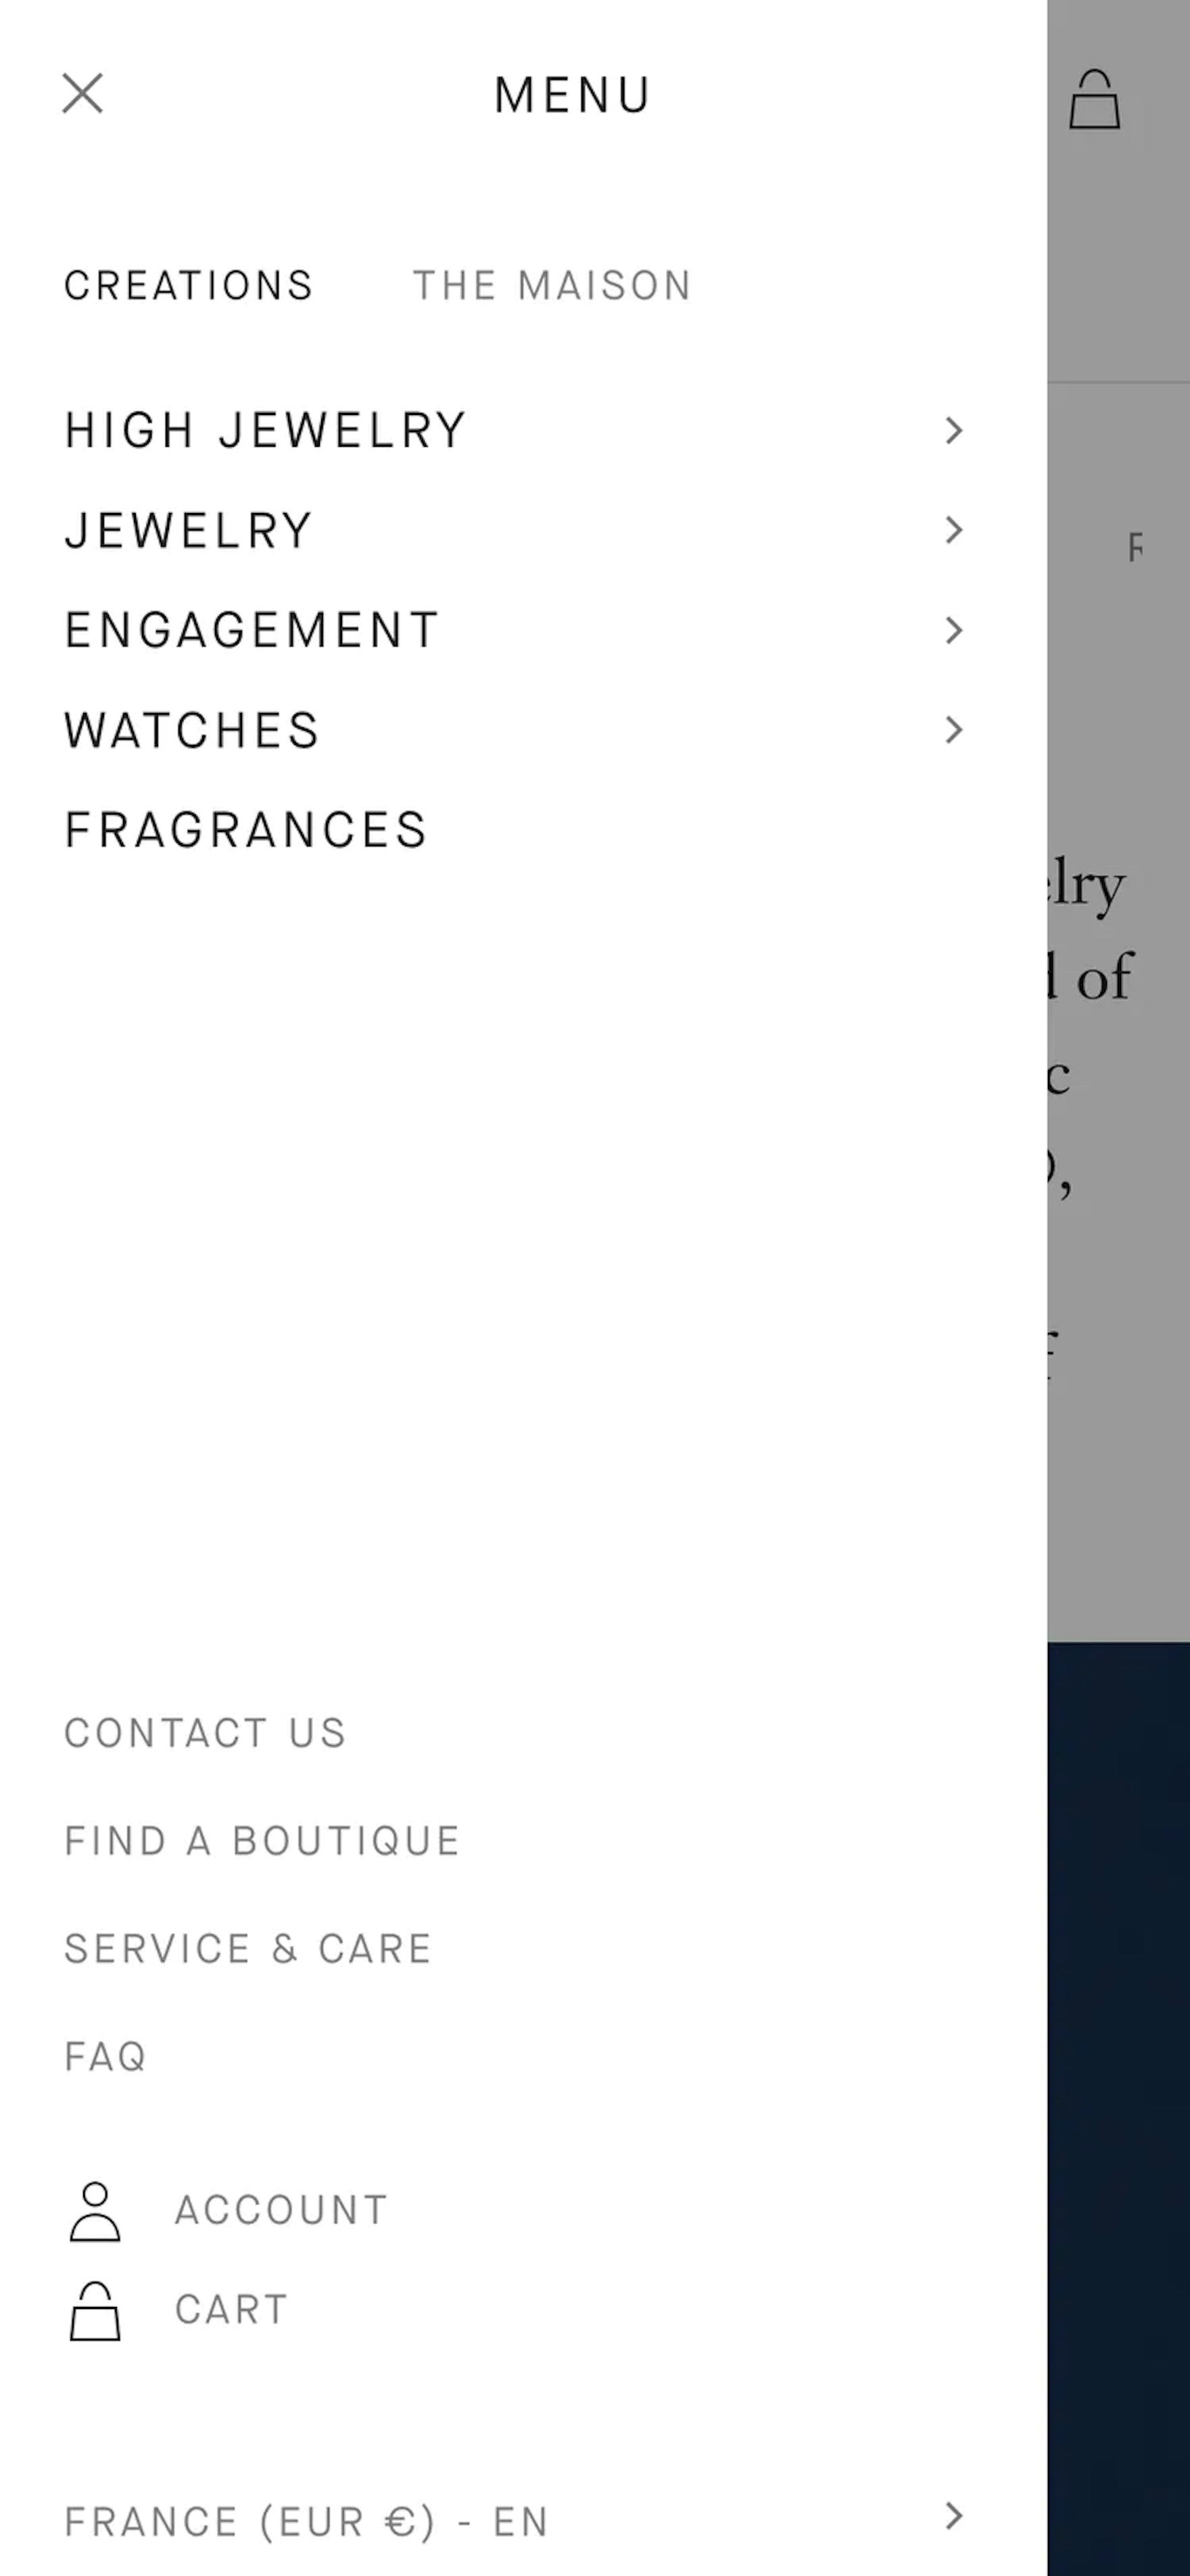 Louis Vuitton's E-Commerce UX Case Study – Baymard Institute